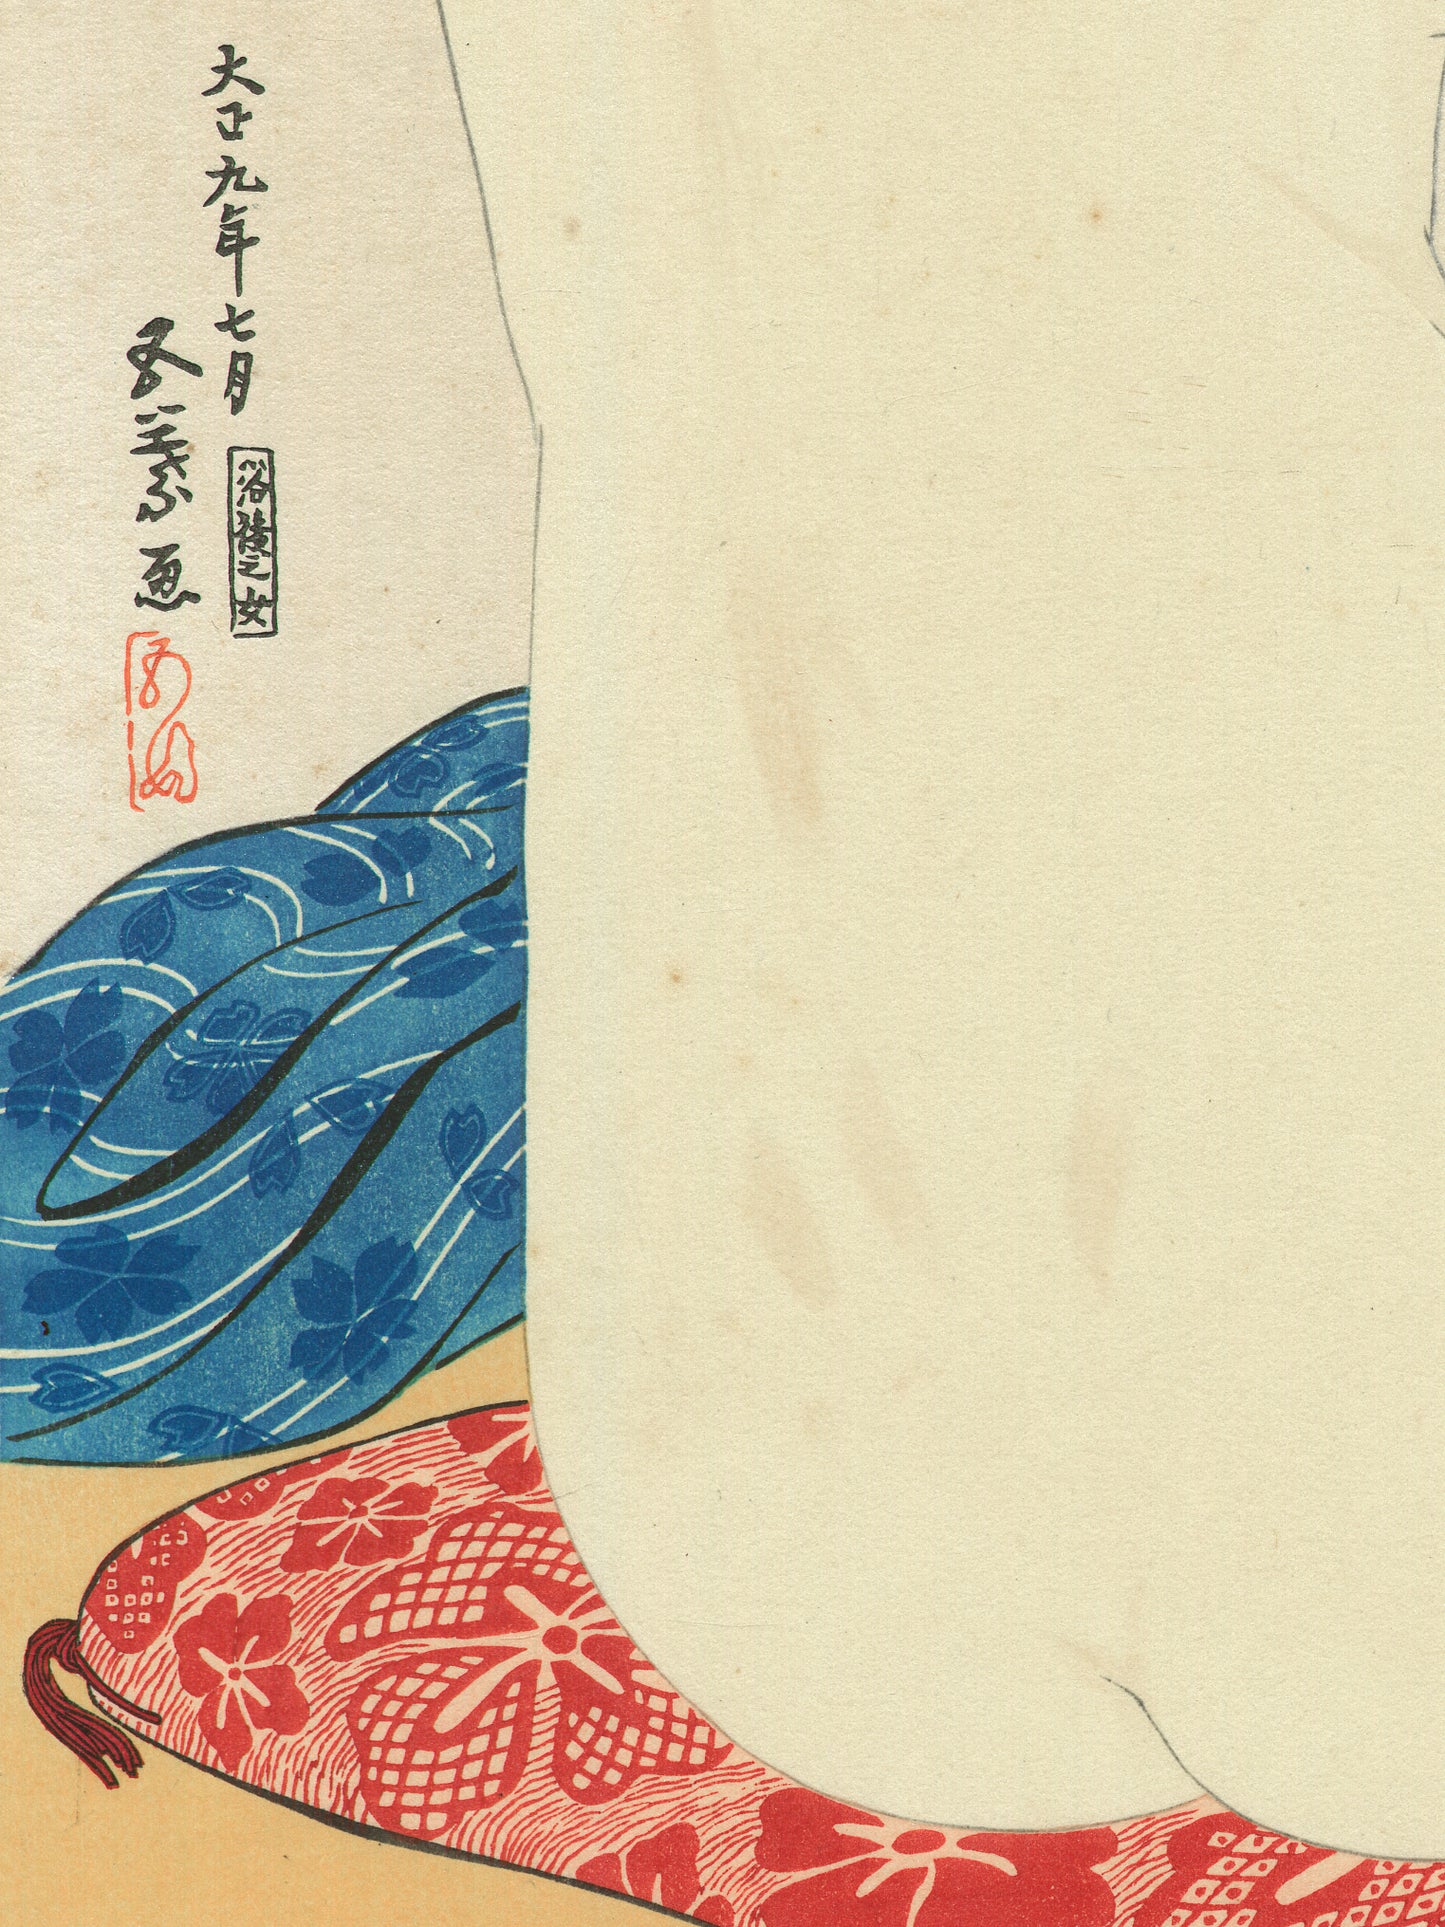 Estampe japonaise détail de l’estampe sur le bas du dos et la signature de l’artiste